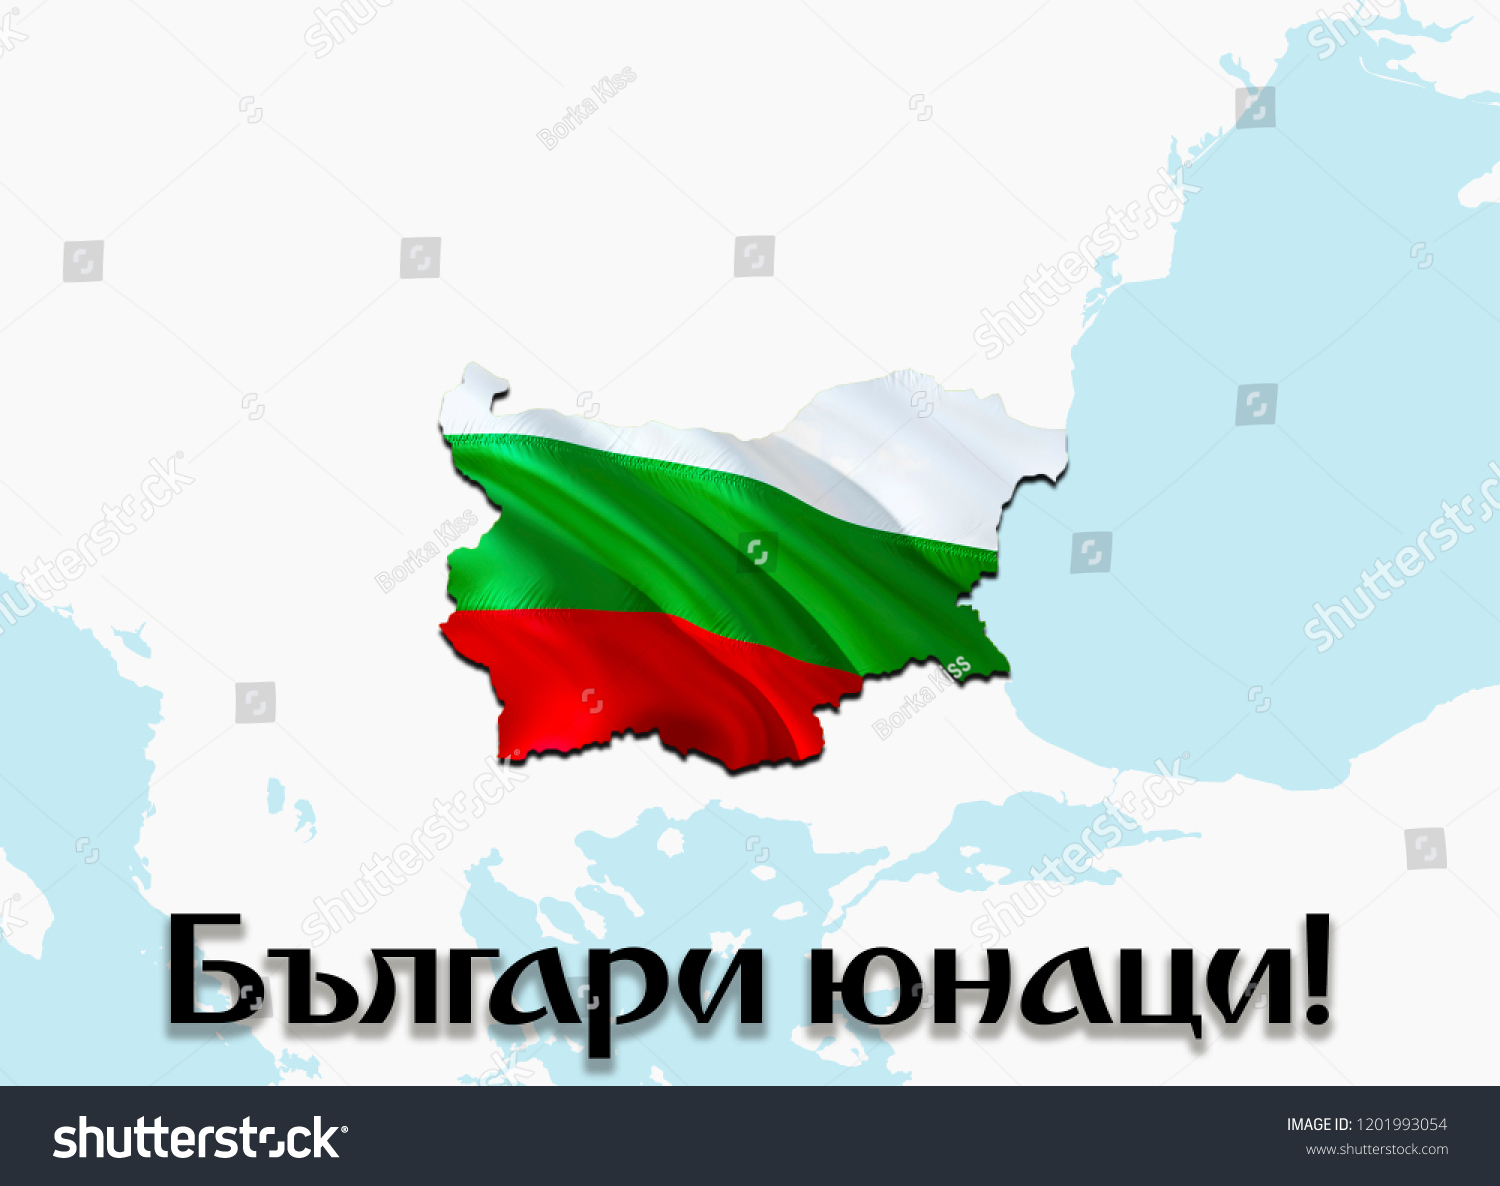 bulgari unaci